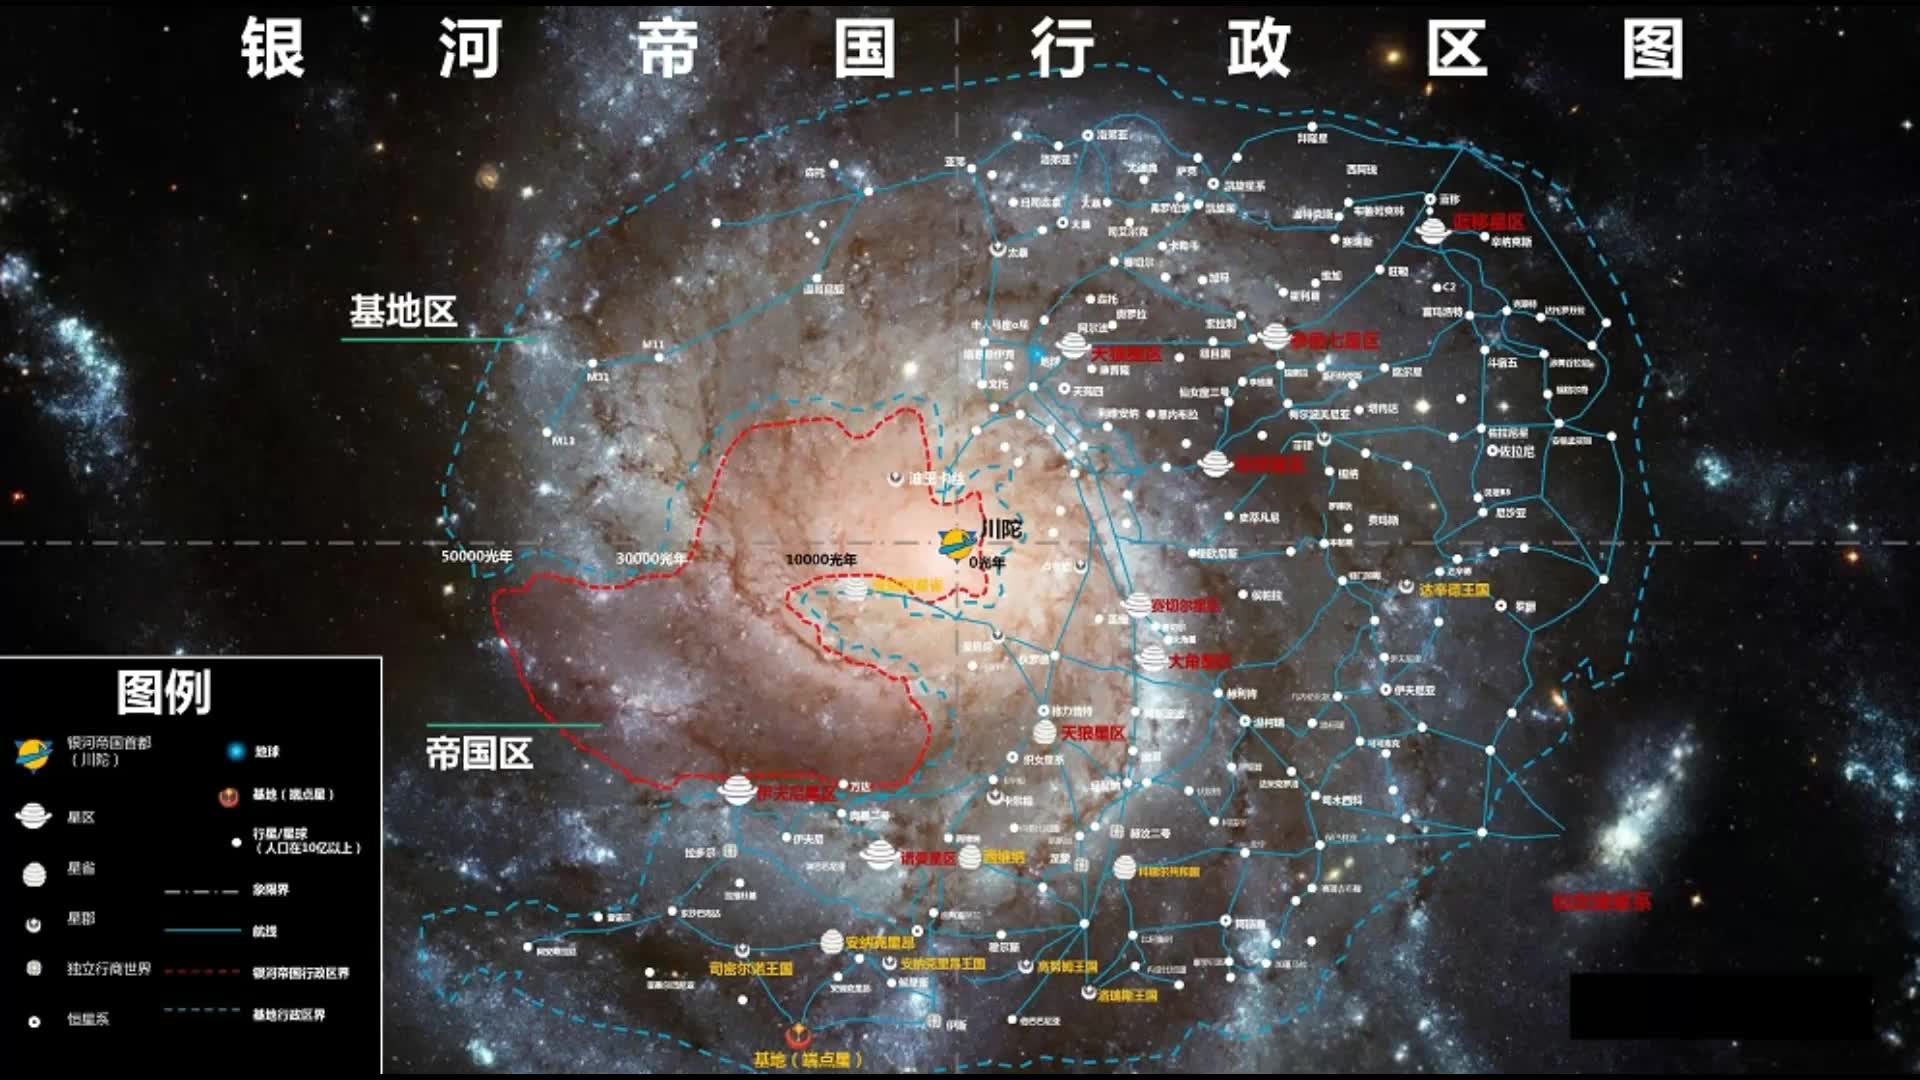 阿西莫夫银河帝国版图图片